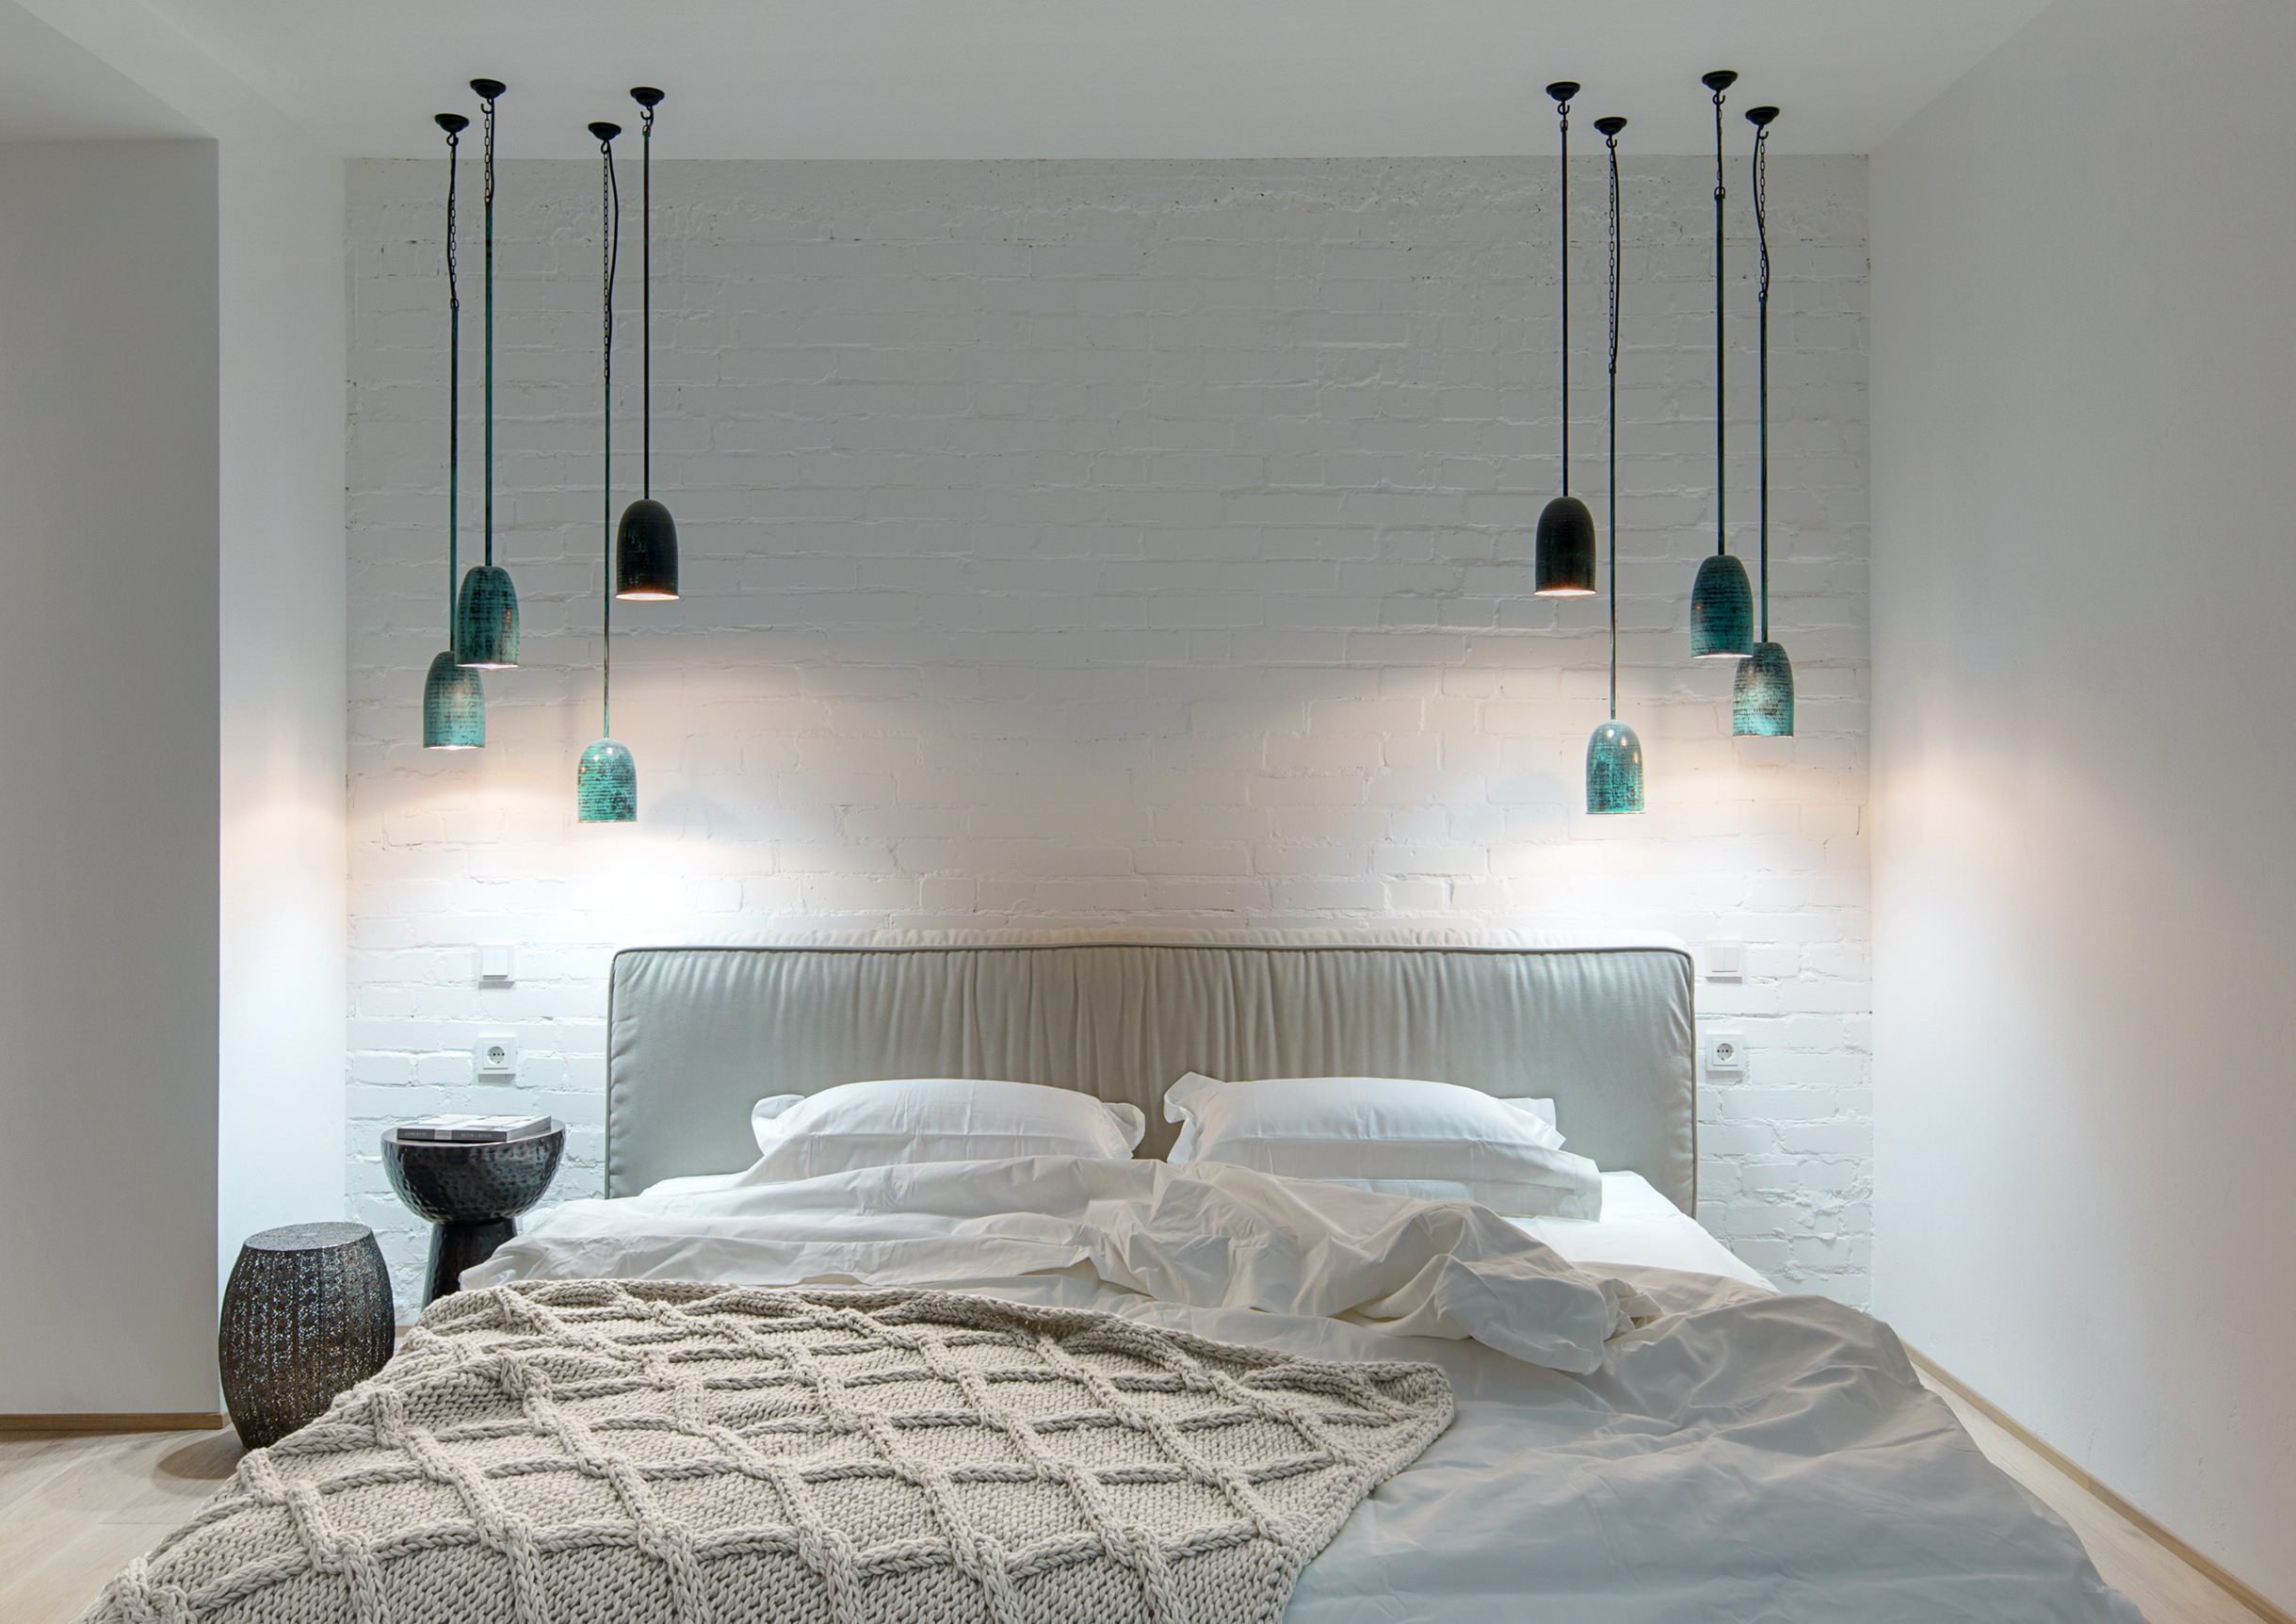 Profi-Idee: Nachttischlampe an die Decke hängen